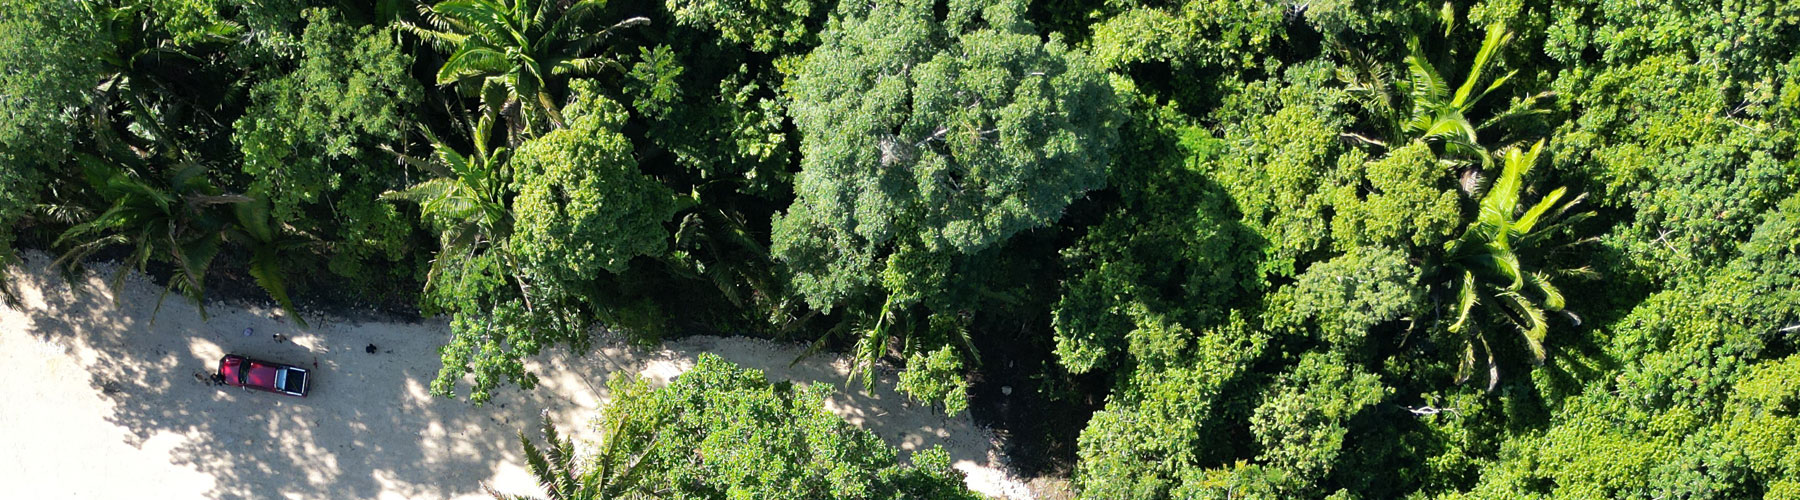 Belize Karst Habitat Conservation